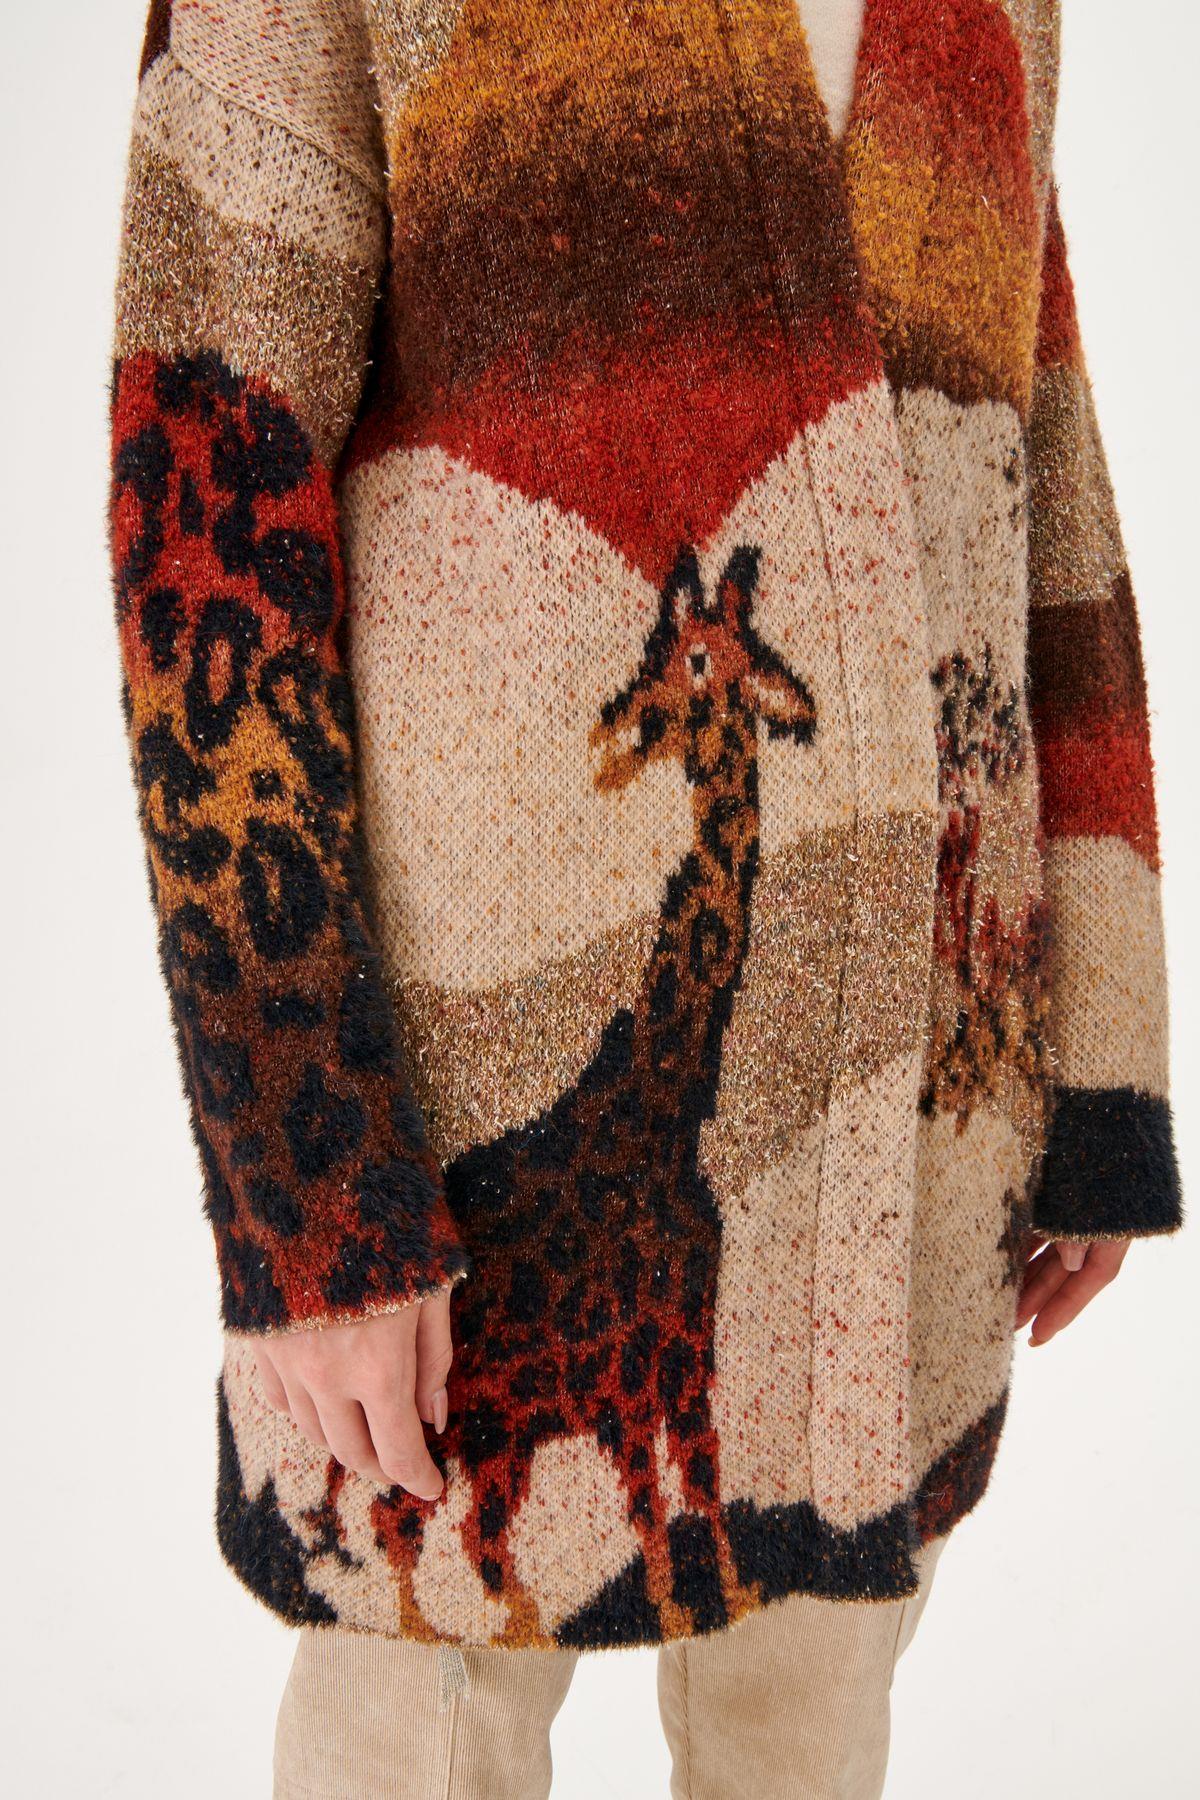 Giraffe Pattern Wool Blend Brown Knitwear Cardigan